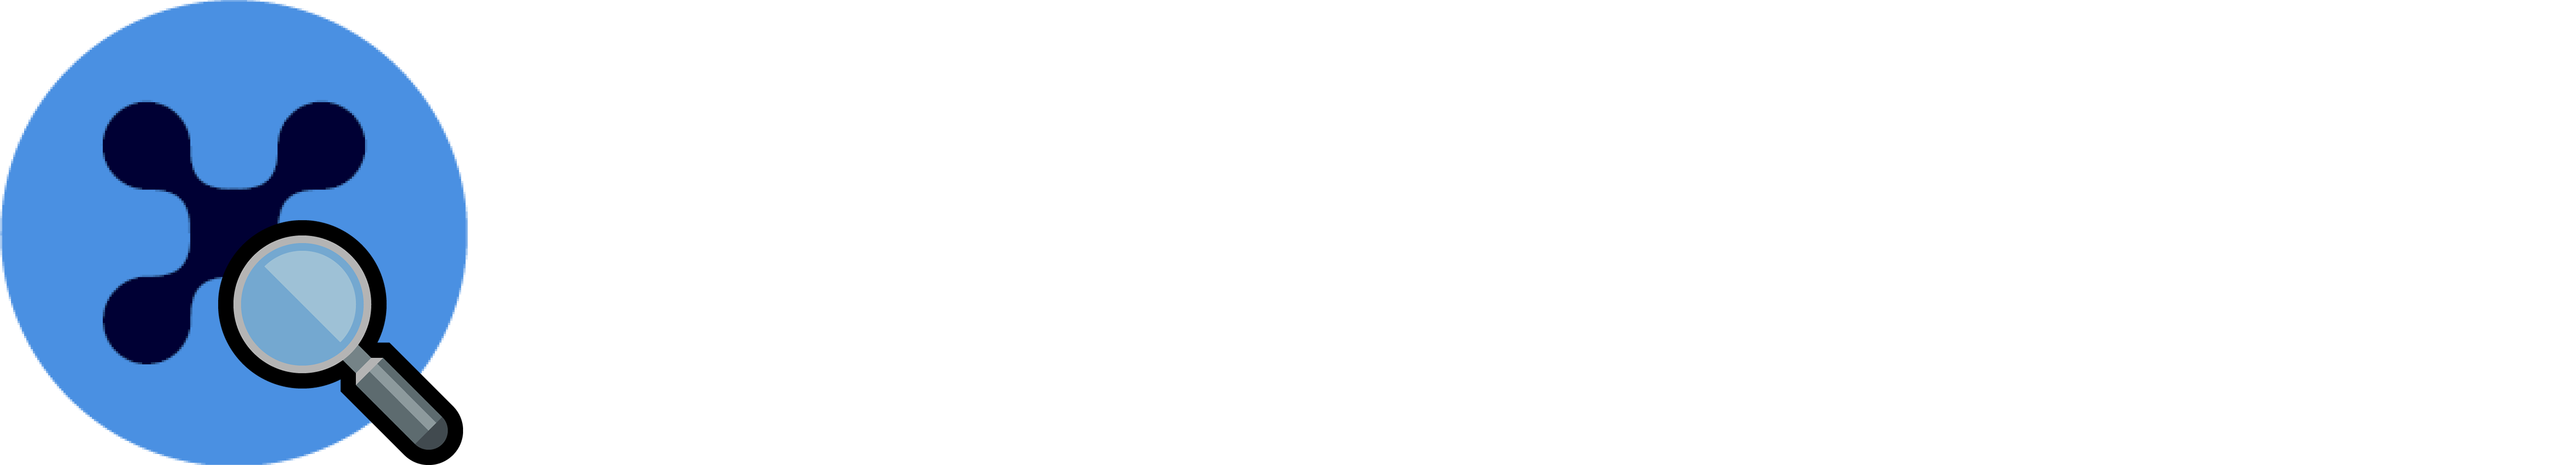 nanexplorer logo logo